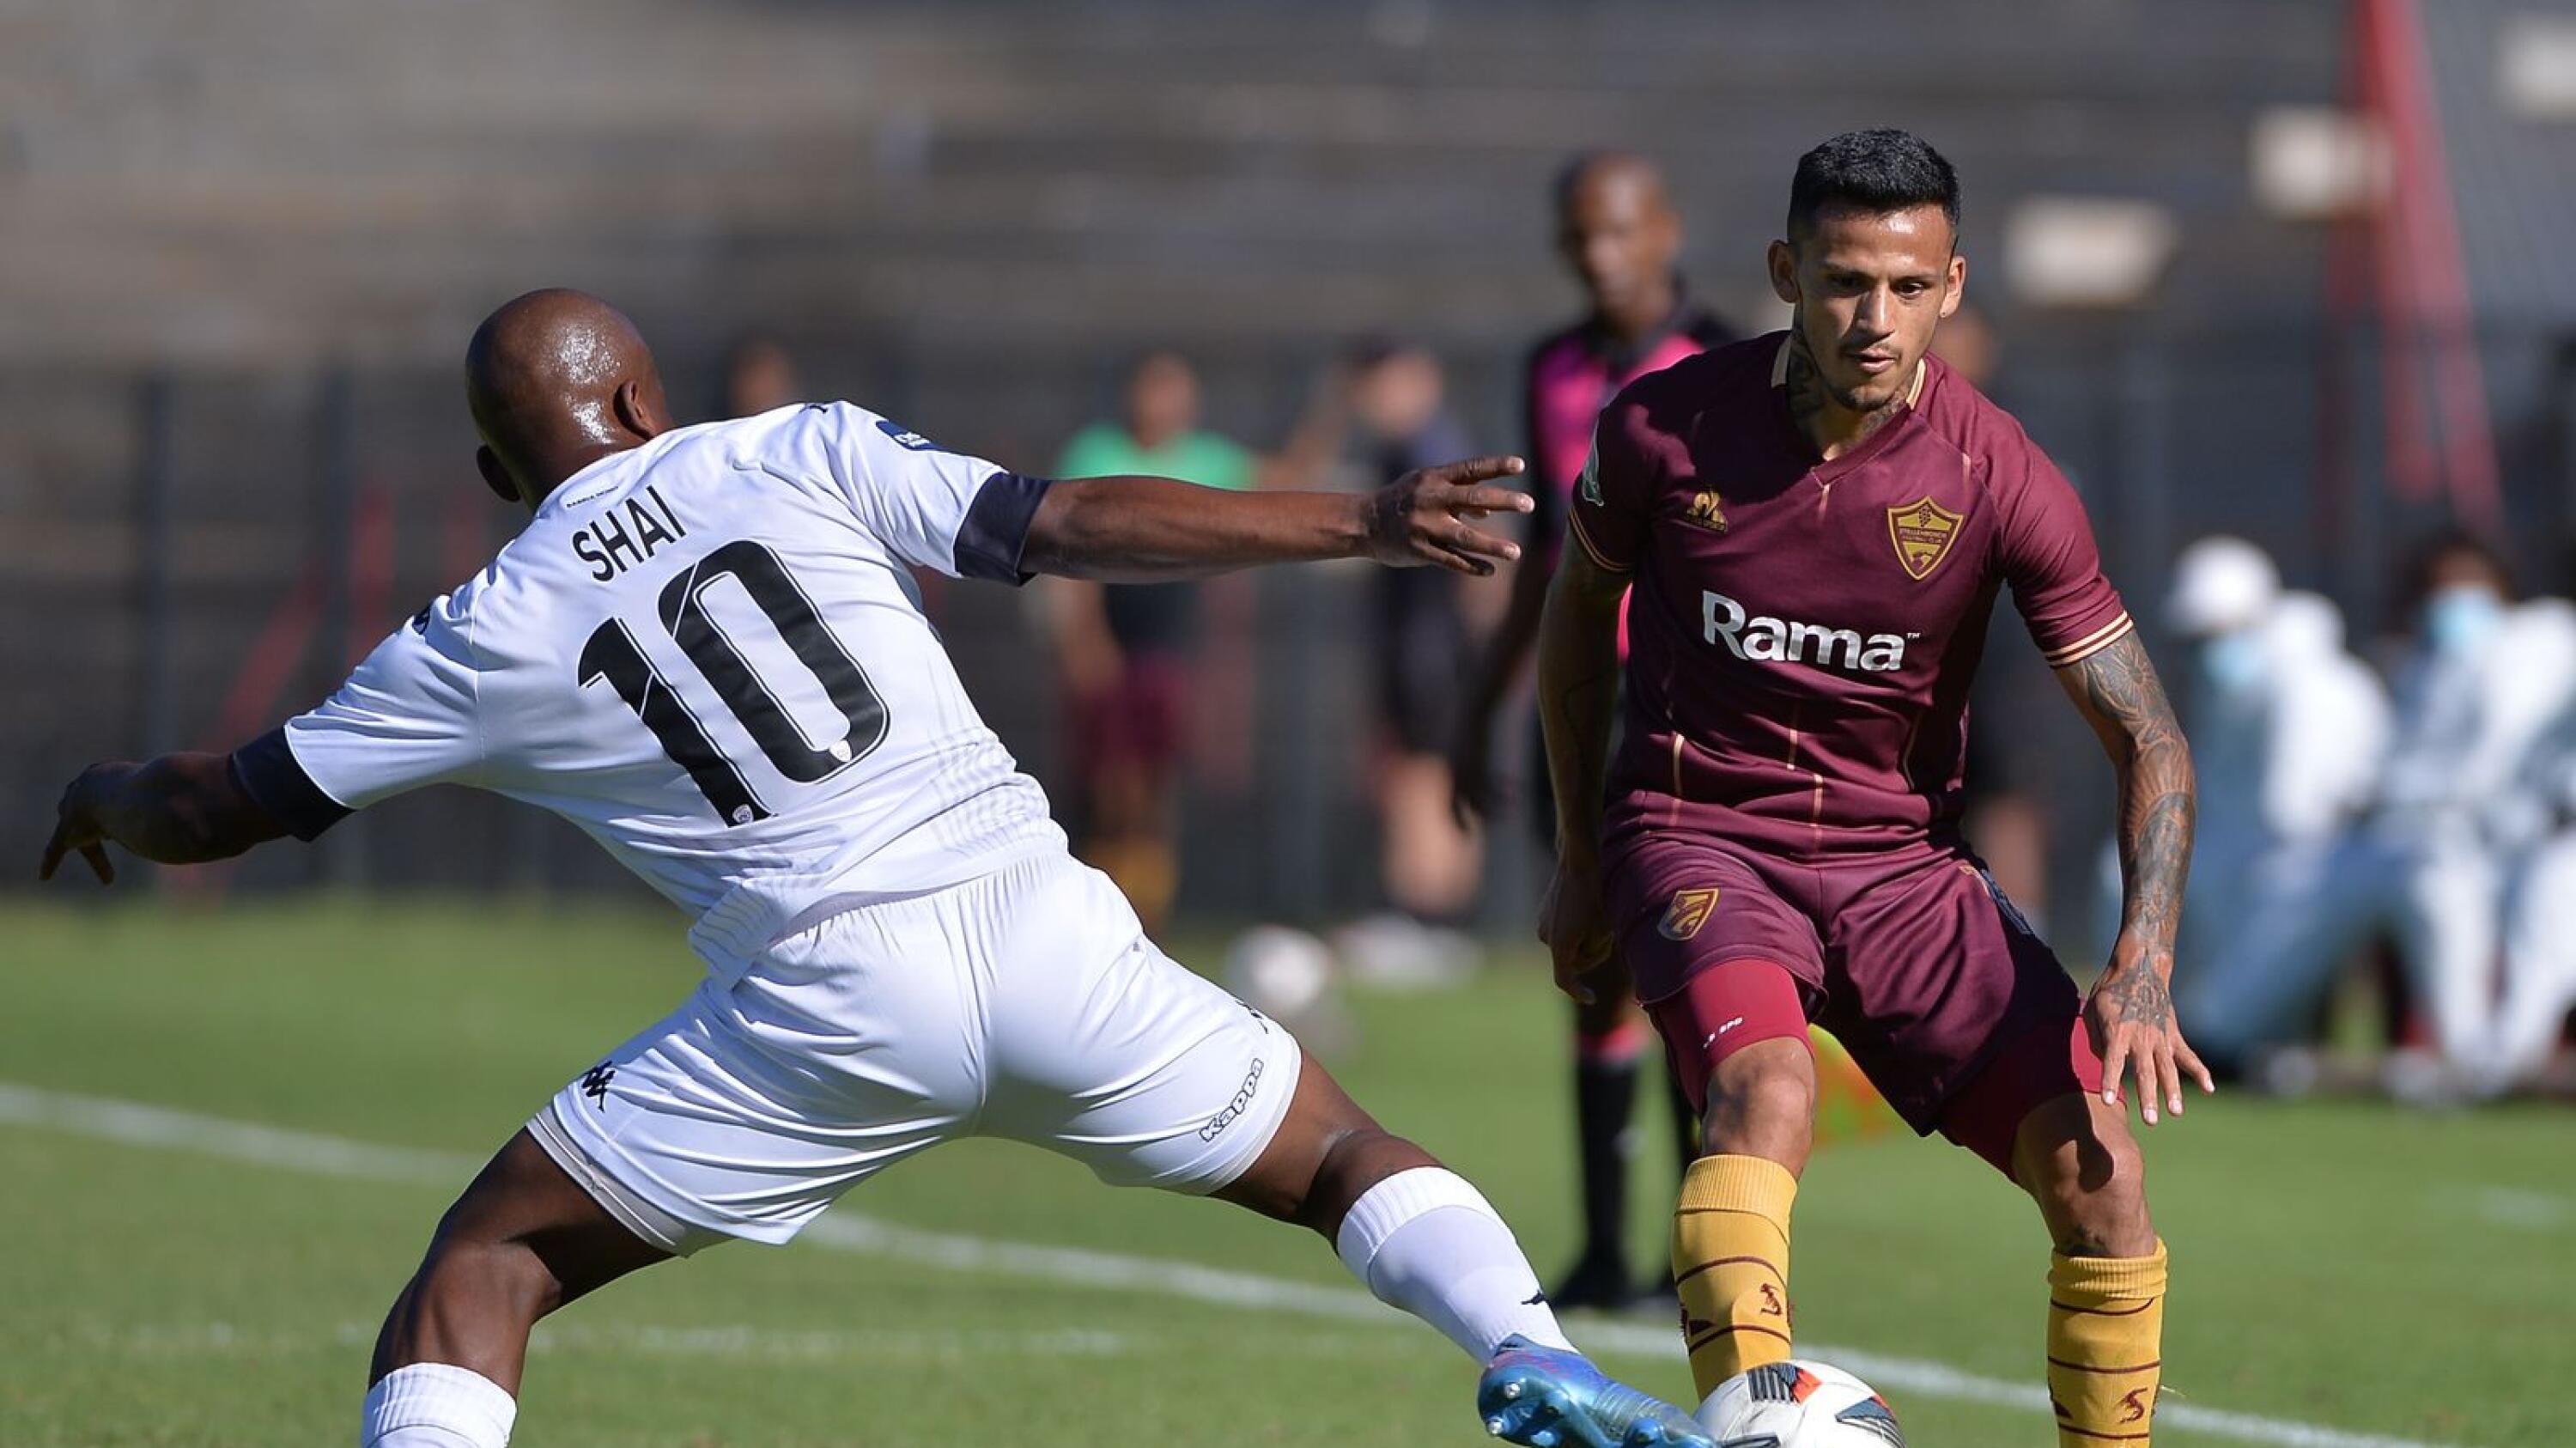 Junior Leandro Mendieta of Stellenbosch FC is challenged by Siyabulela Shai during their DStv Premiership match at Danie Craven Stadium in Stellenbosch on Saturday